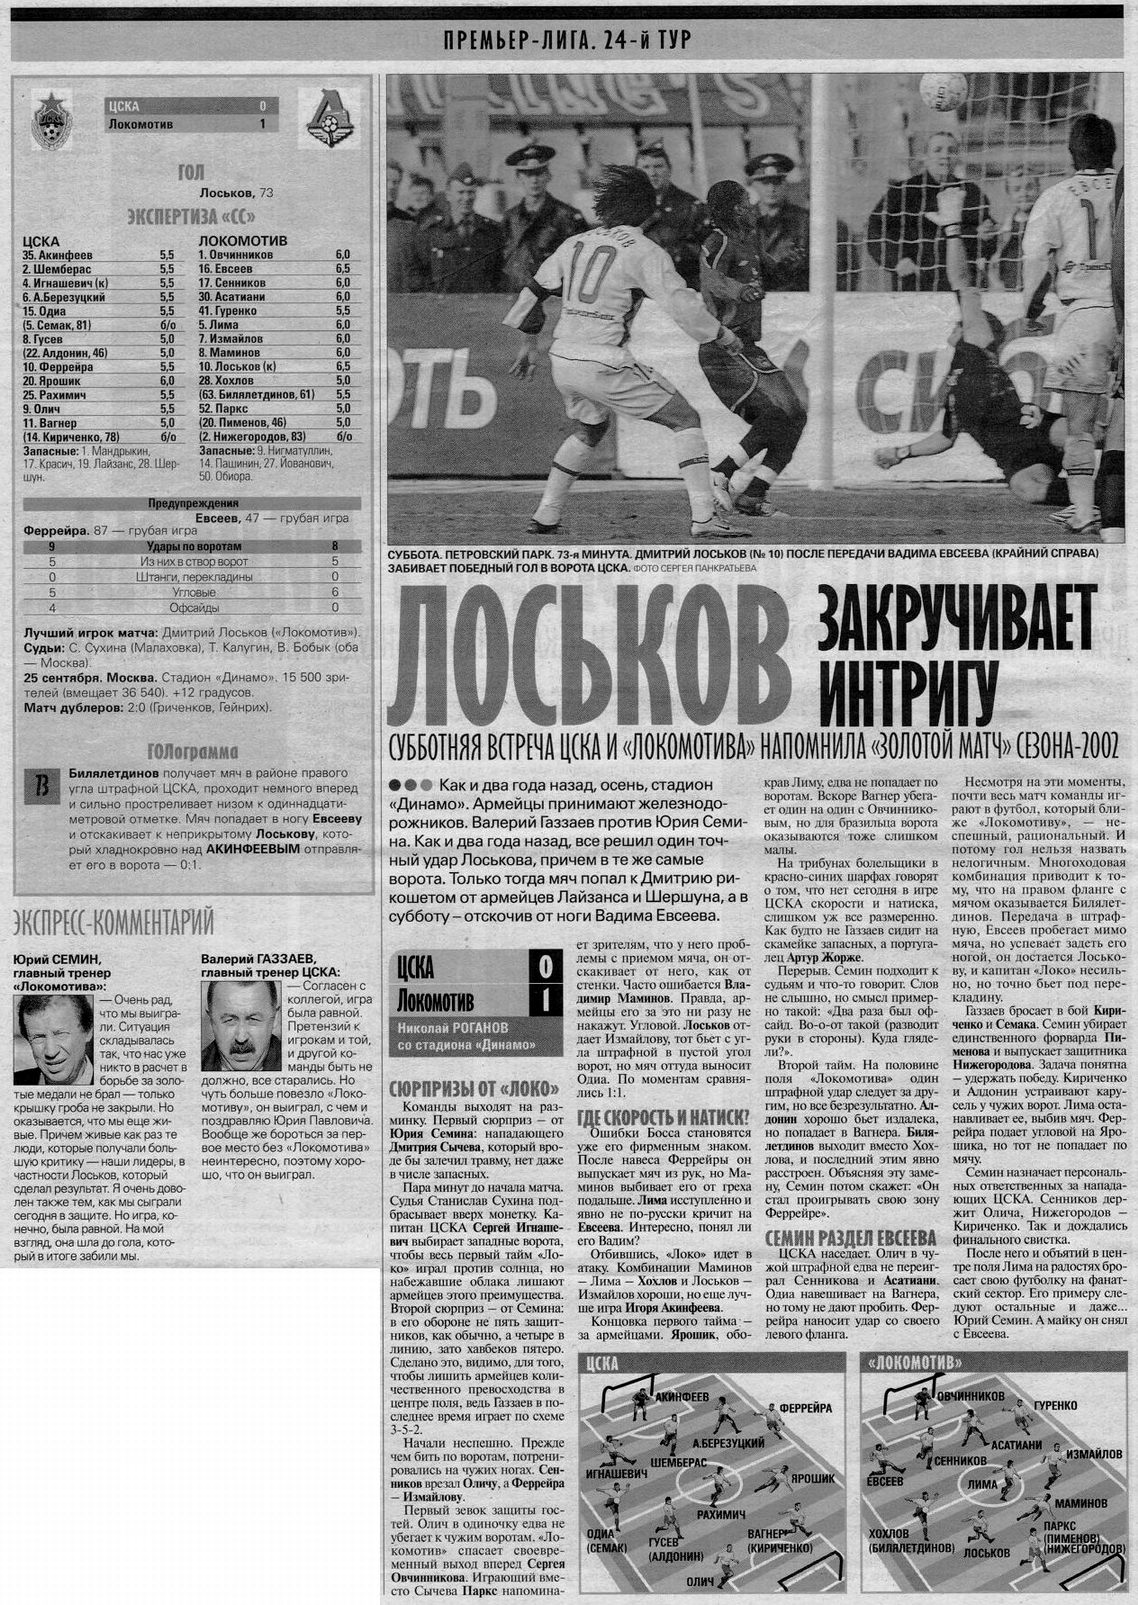 2004-09-25.CSKA-LokomotivM.3